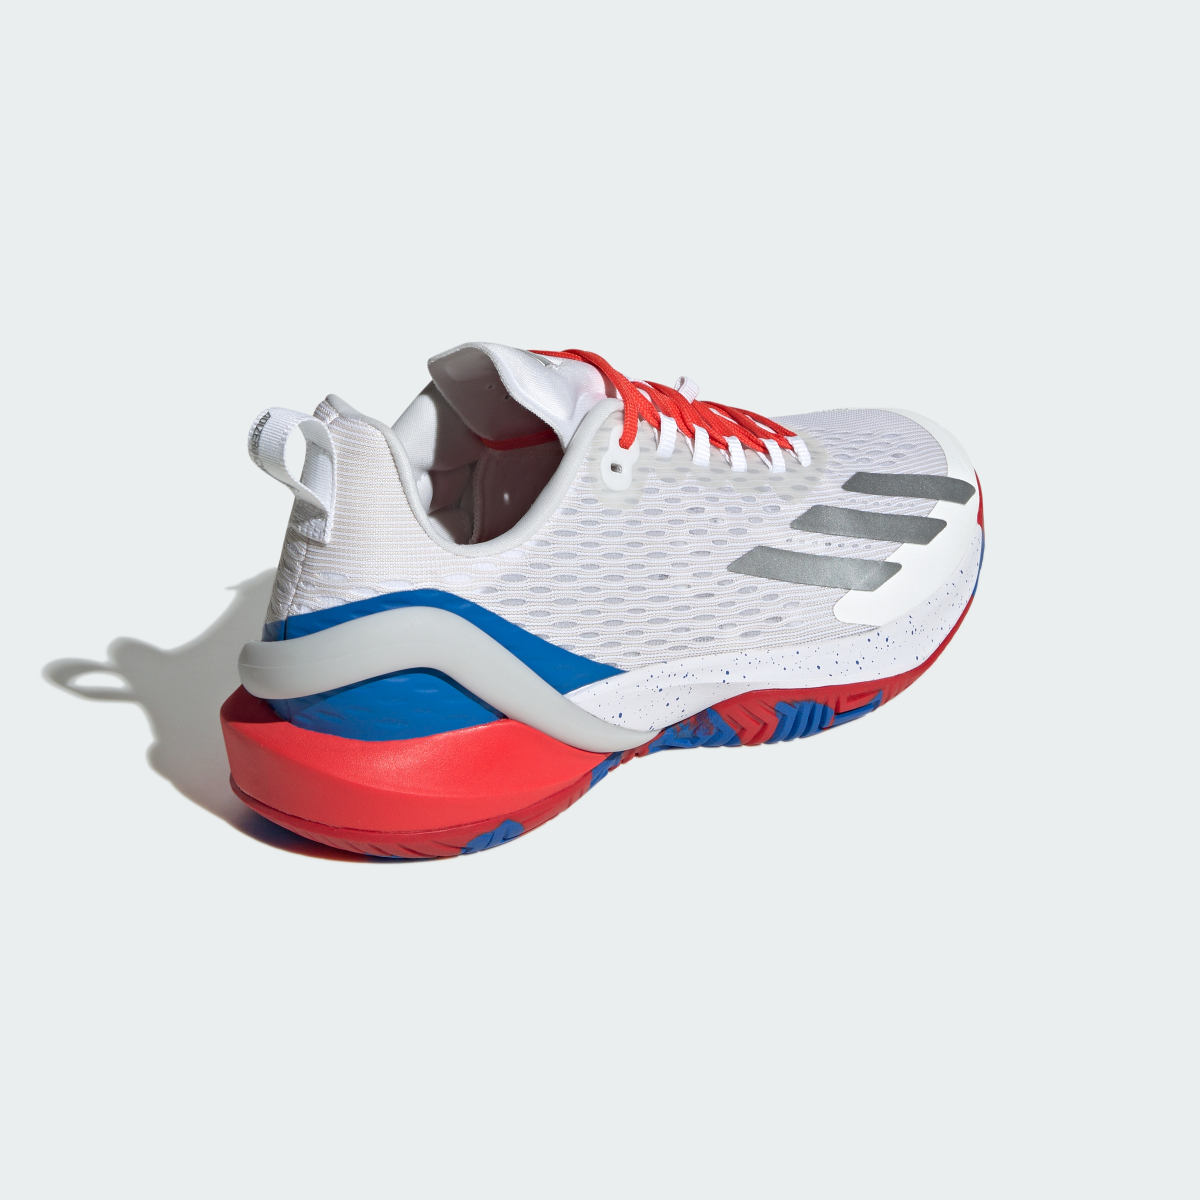 Adidas Adizero Cybersonic Tennis Shoes. 6